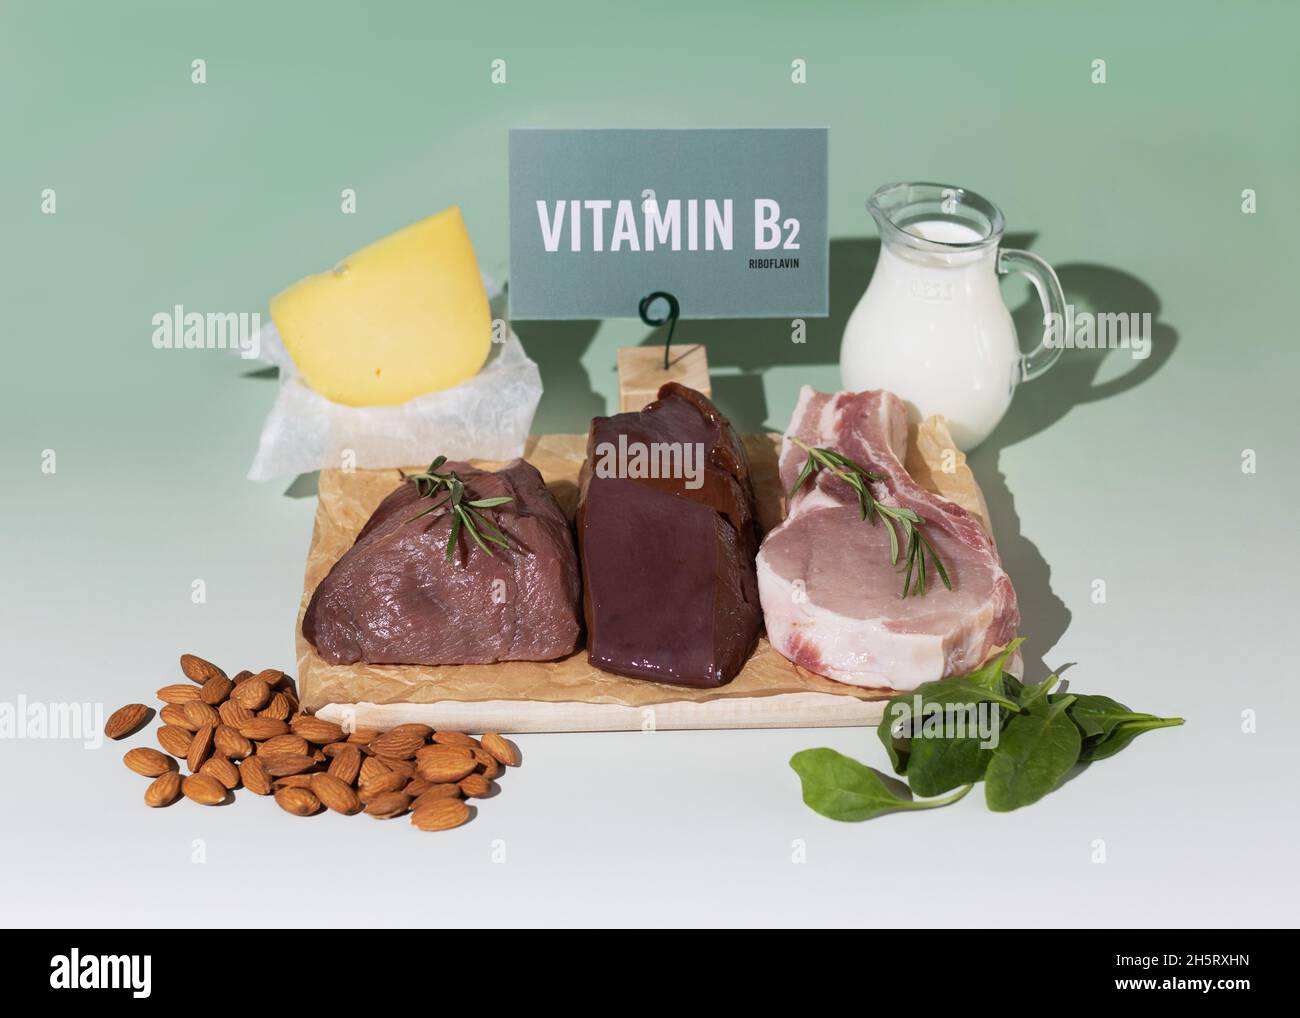 Un ensemble de produits naturels riches en vitamine B2 riboflavine.Concept d'alimentation saine.Panneau en carton avec inscription. Banque D'Images